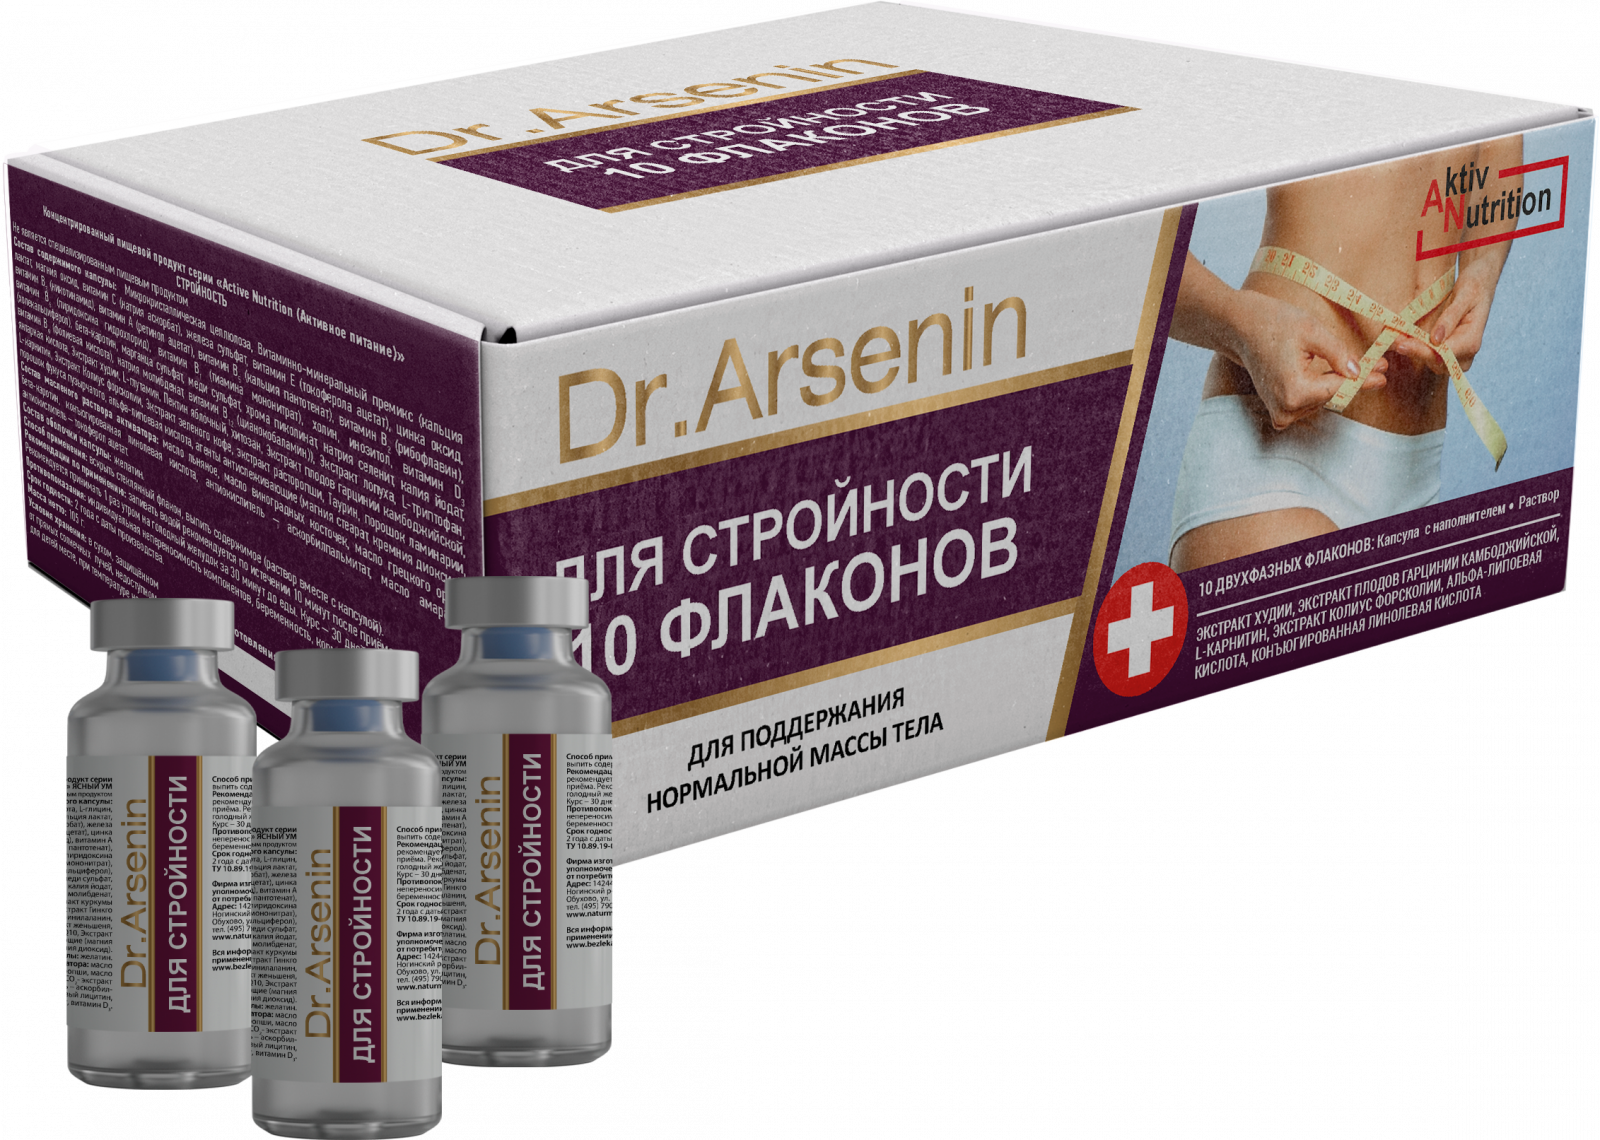 Натуральные средства для снижения веса «"Active nutrition" СТРОЙНОСТЬ Dr. Arsenin 10 флаконов» - Снижение веса